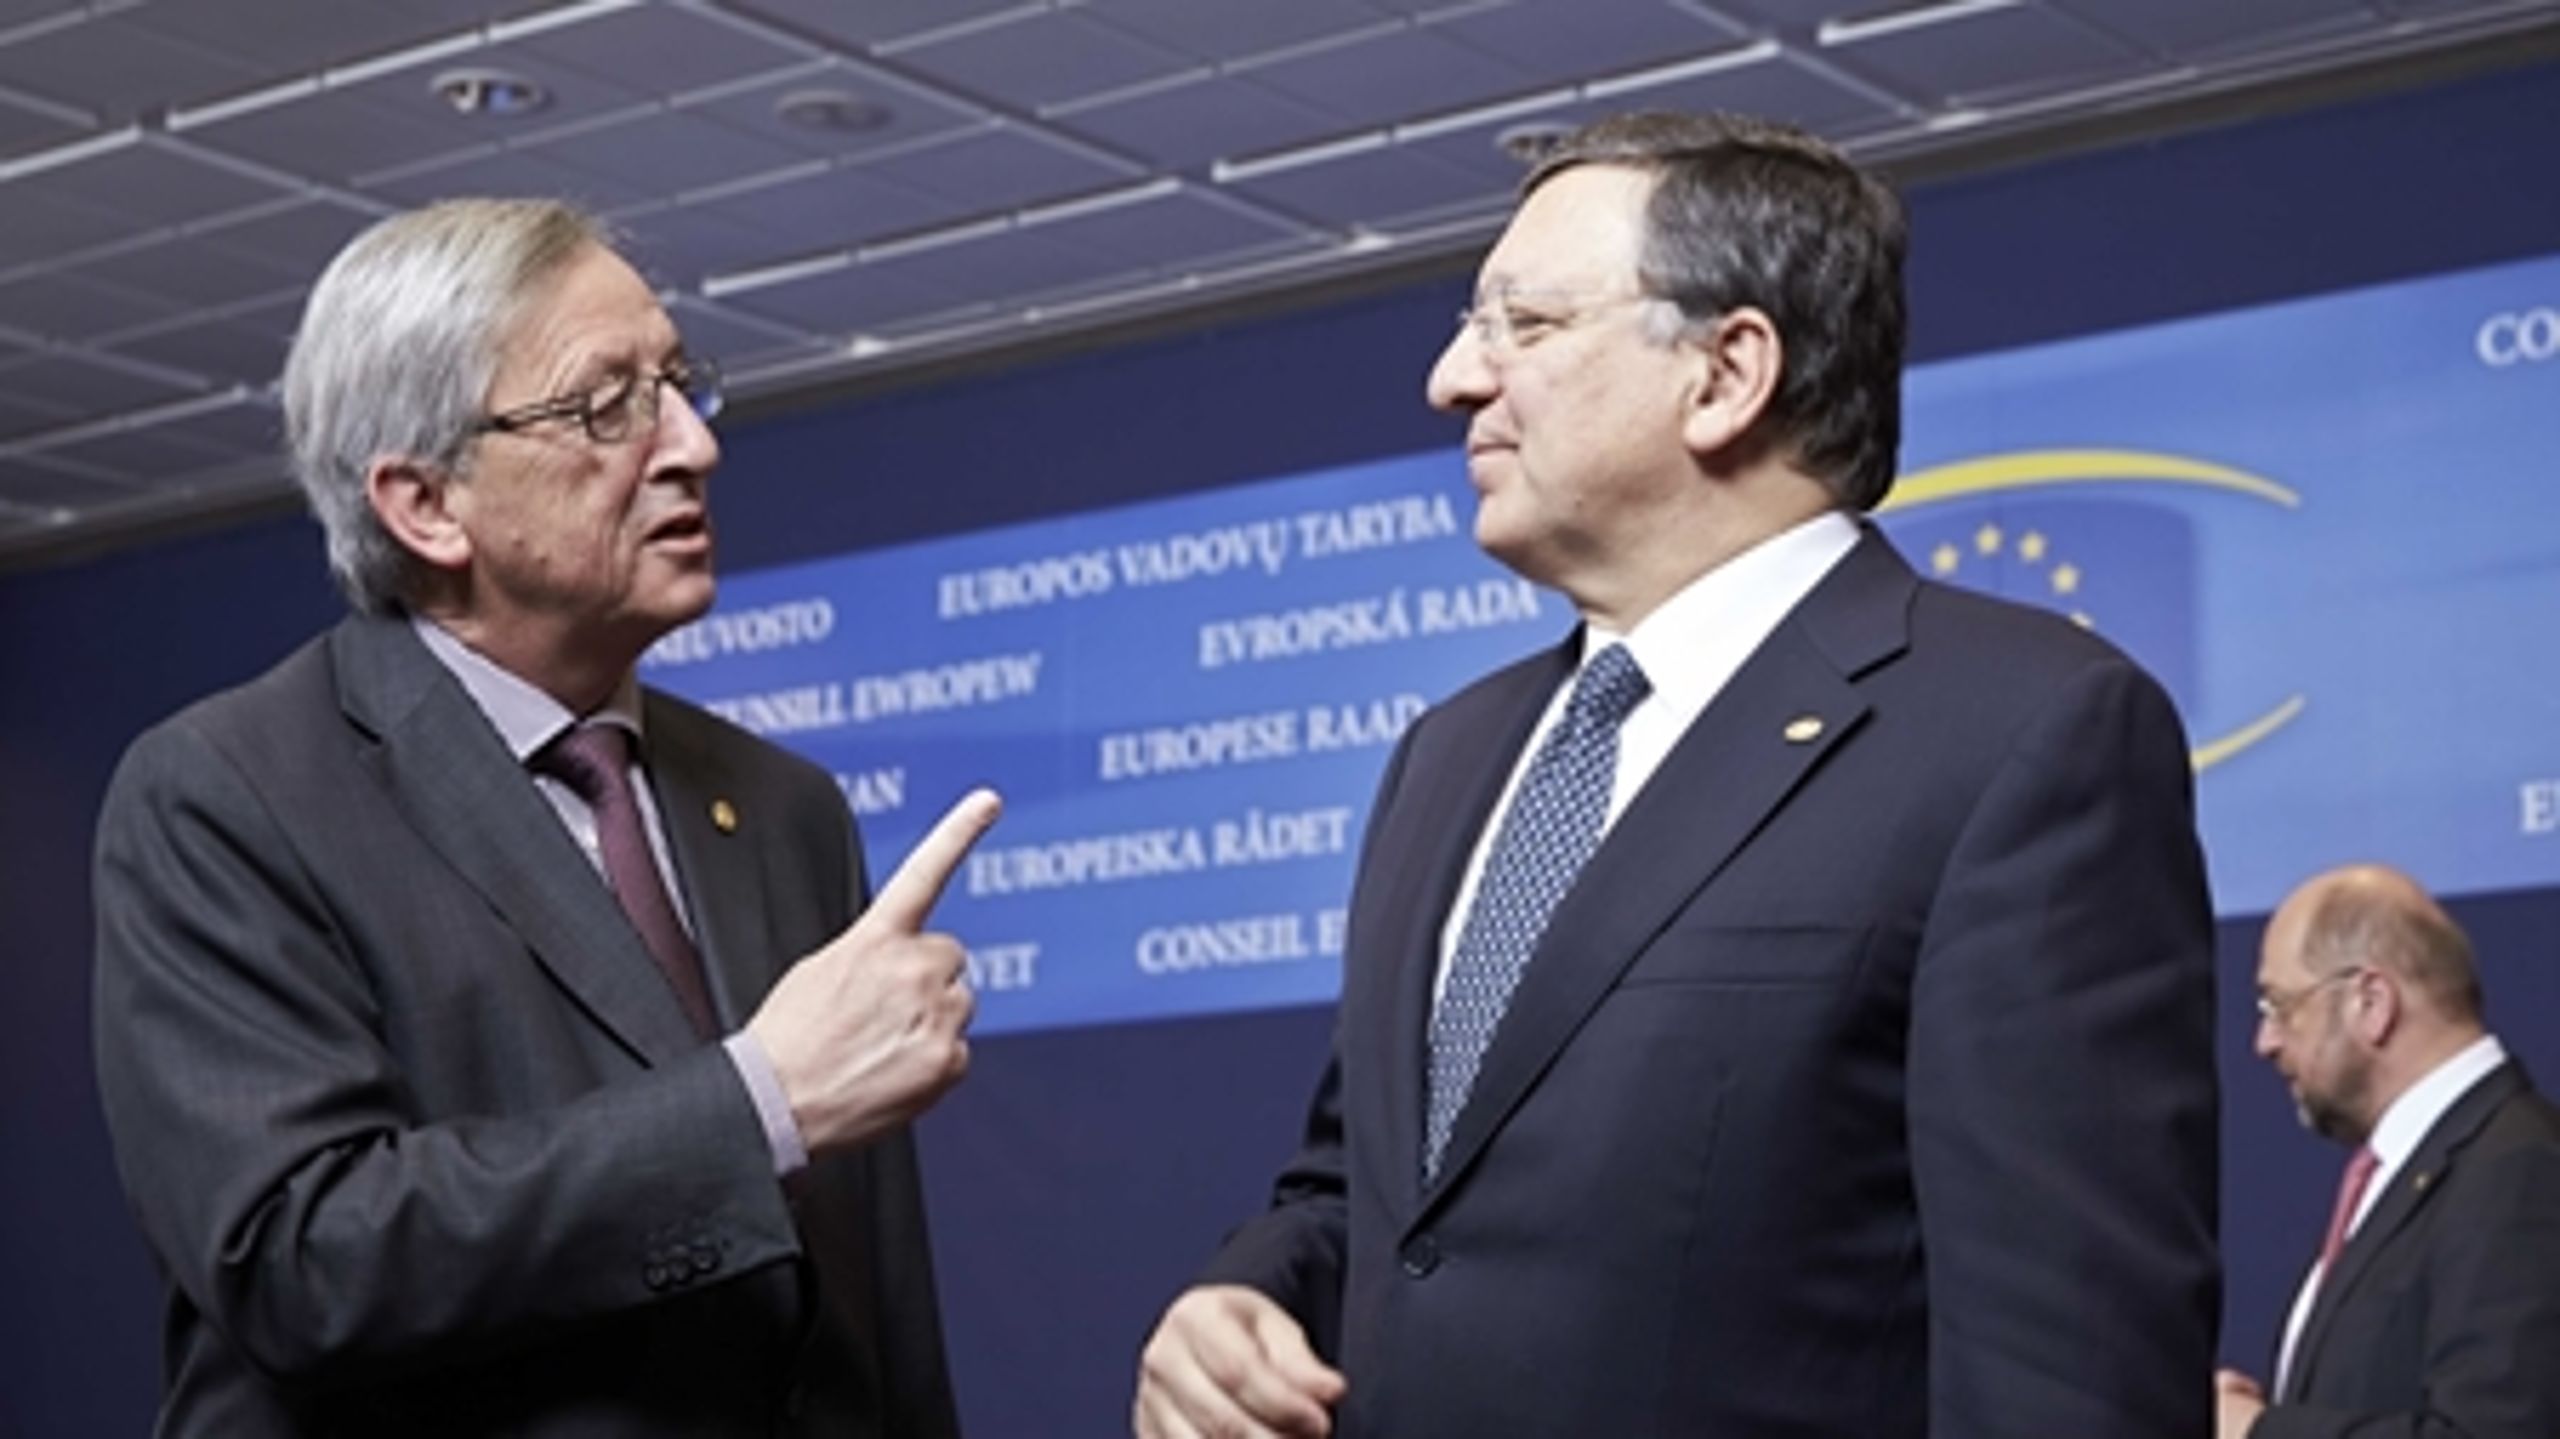 EU's statsledere peger på Luxembourgs tidligere premierminister Jean-Claude Juncker (t.v) som den næste formand for EU-Kommissionen. Her ses han i samtale med den afgående formand José Manuel Barroso (t.h).